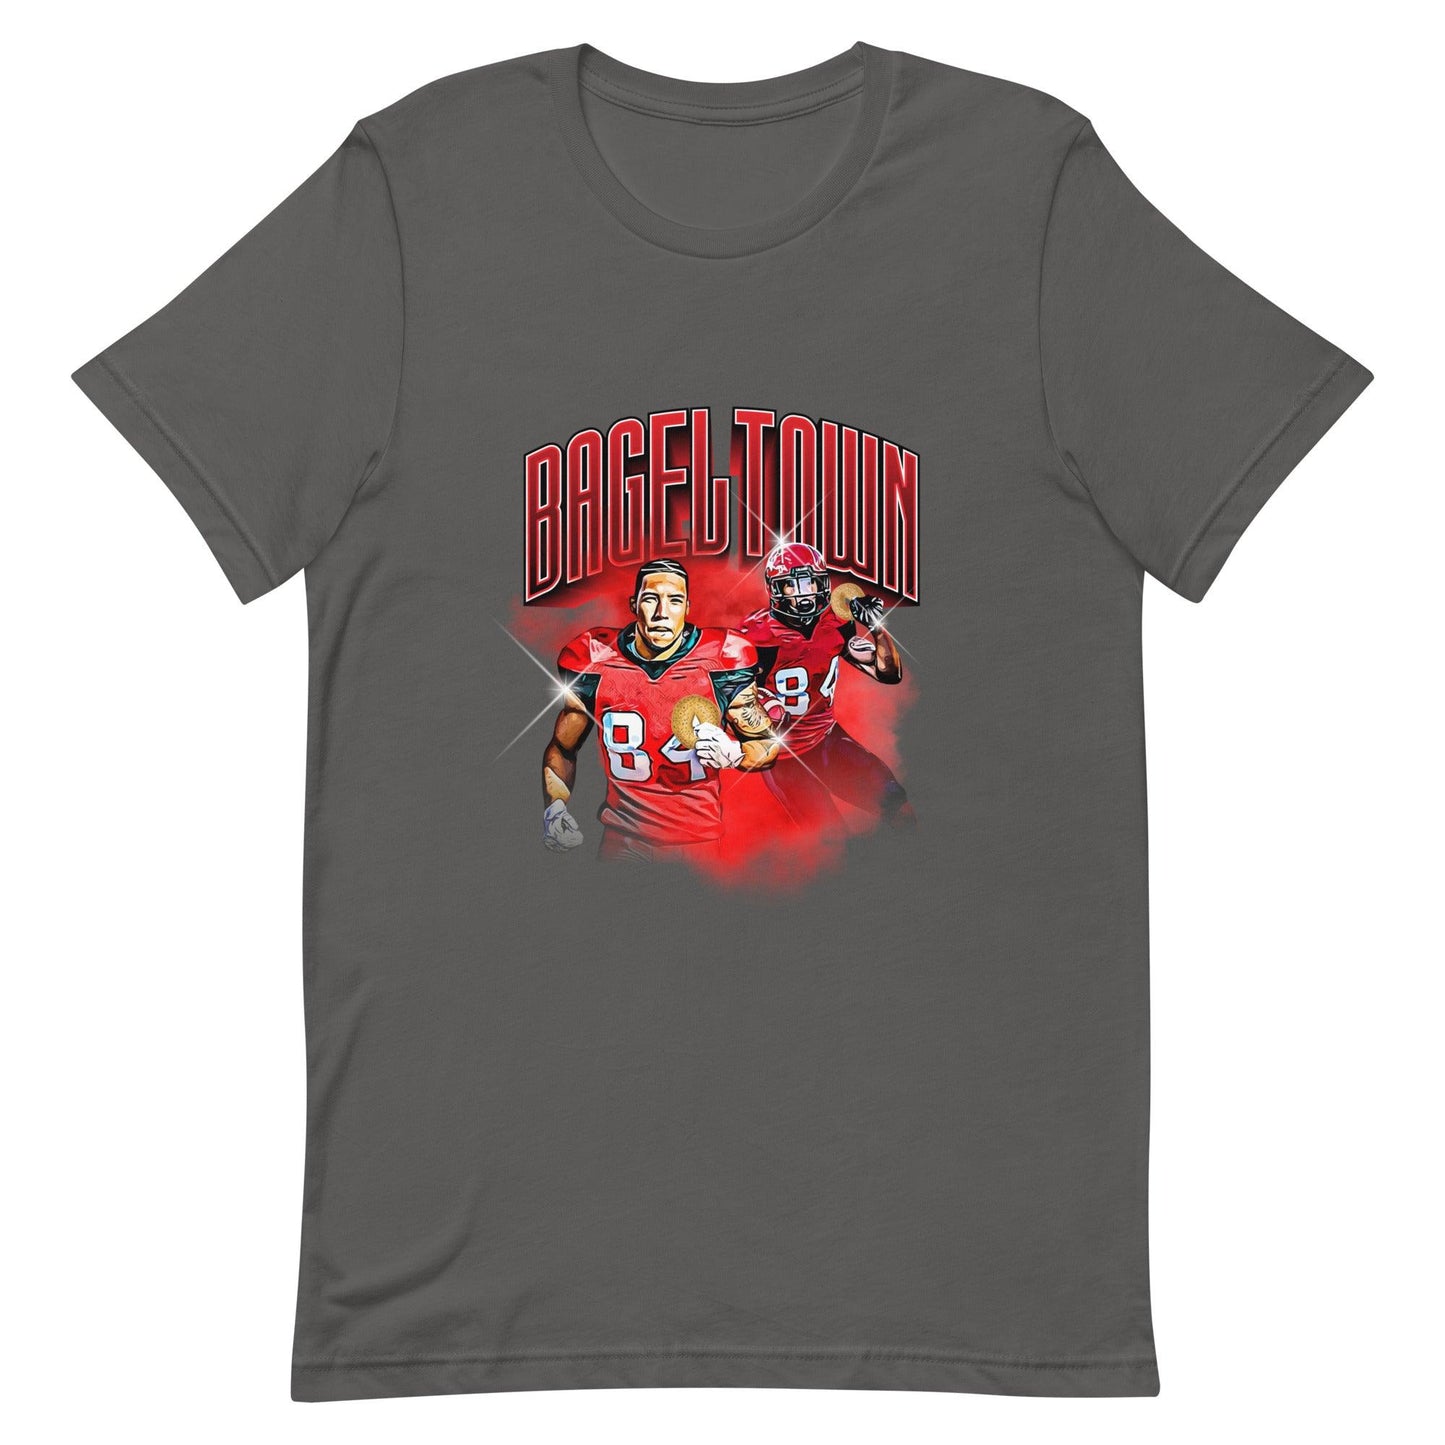 Reggie Begelton "Bageltown" t-shirt - Fan Arch